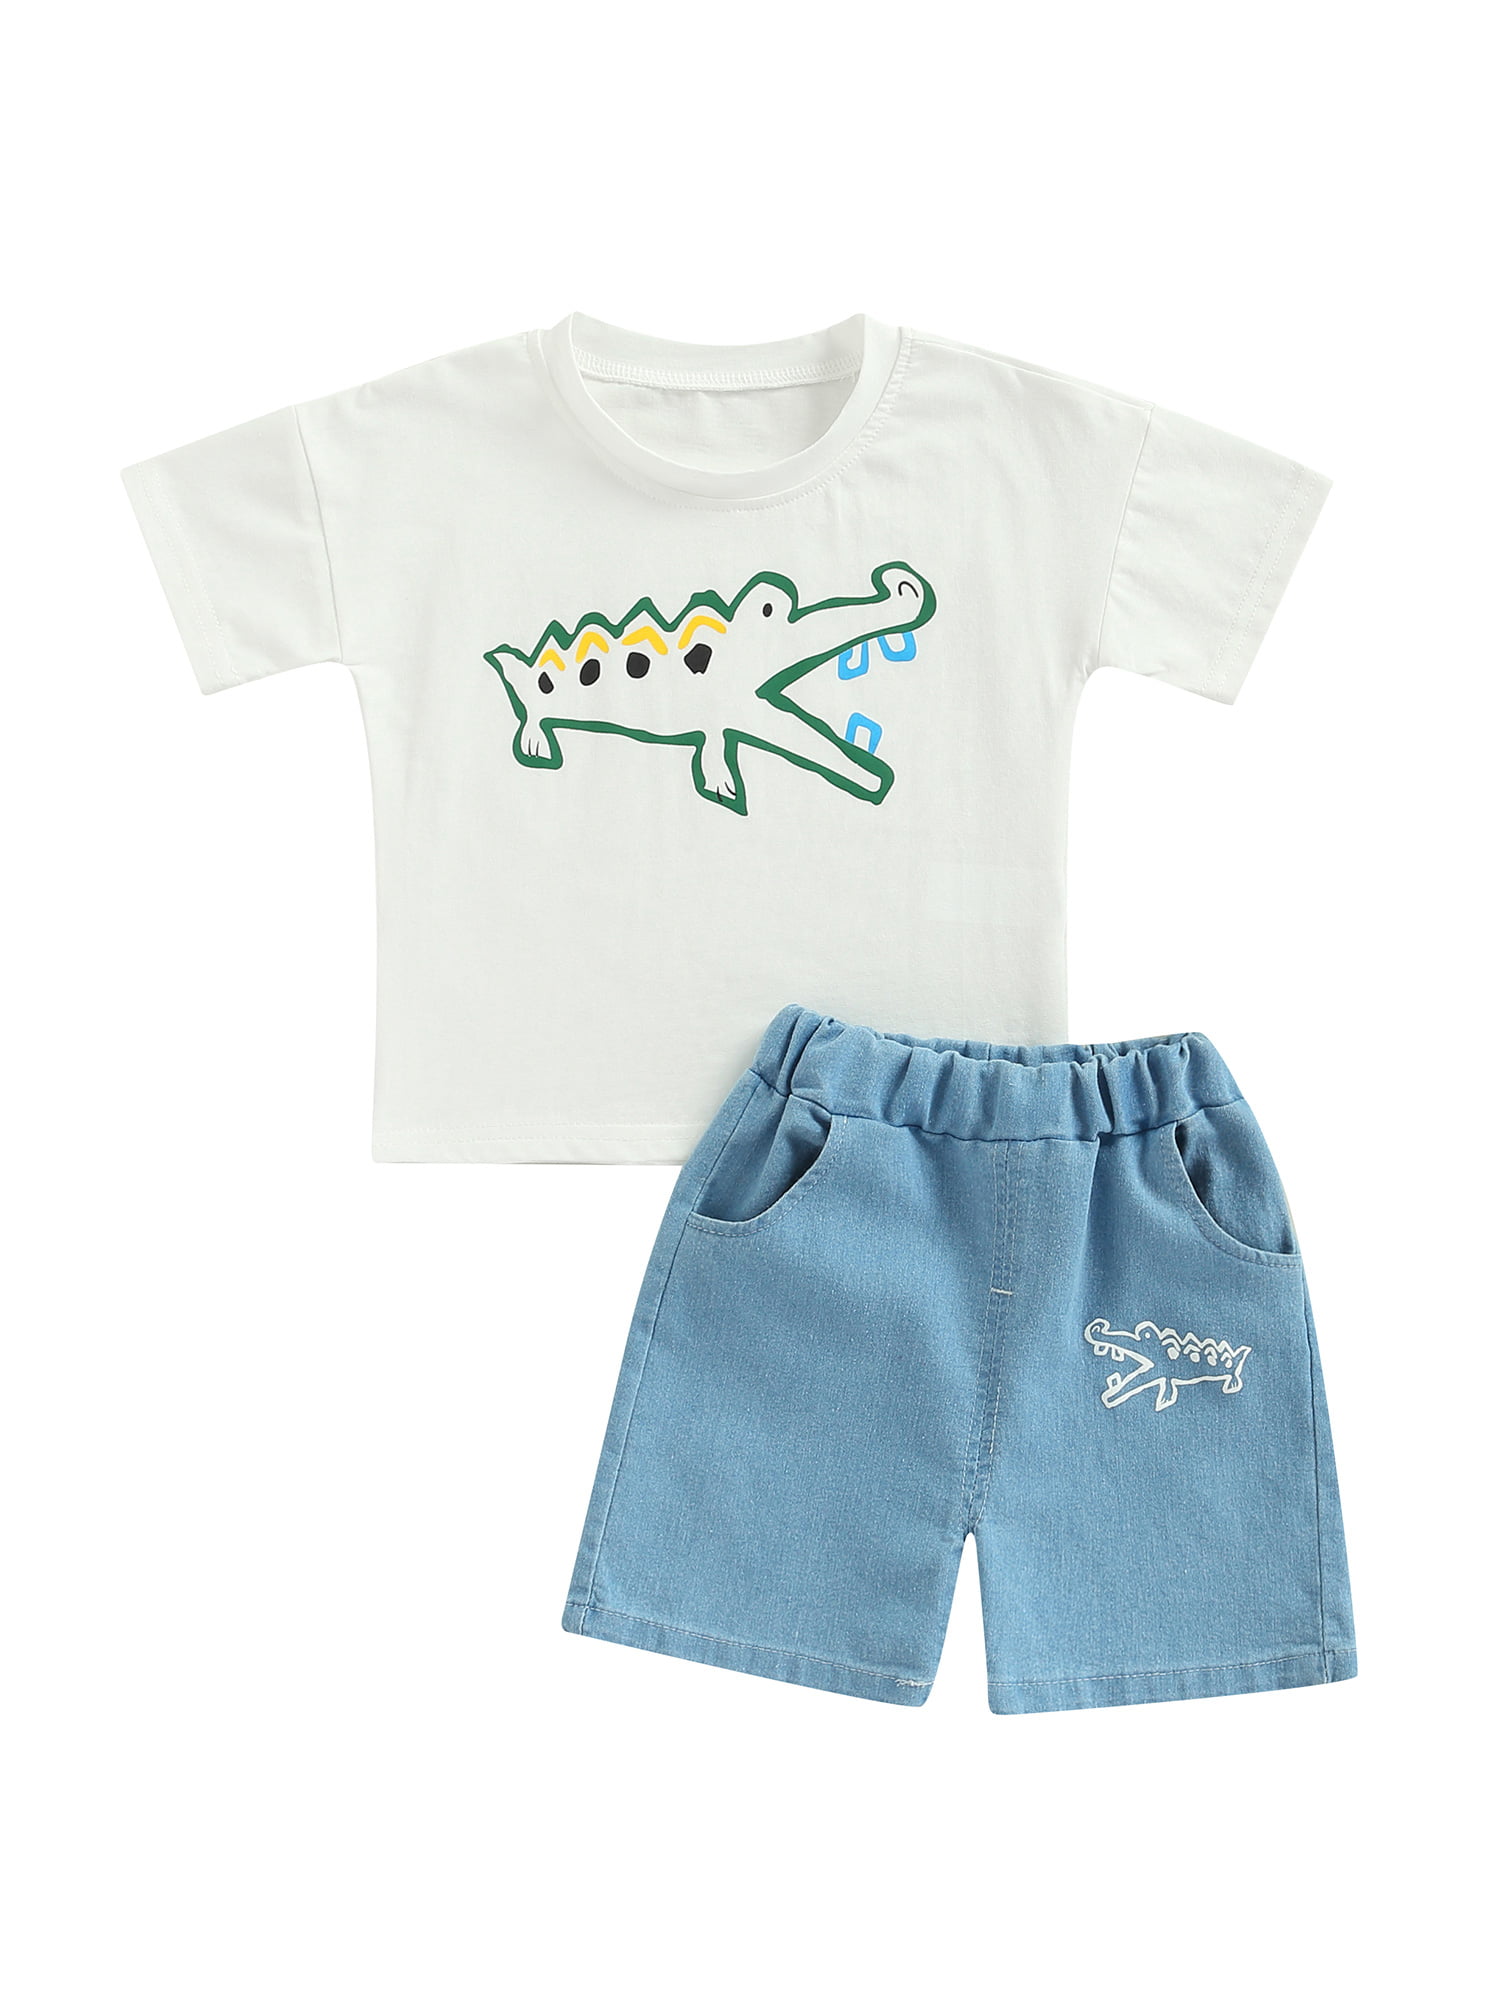 Toddler Kids Baby Boy Dinosaur Print Clothes Shirt Tops Shorts Pants Outfits Set